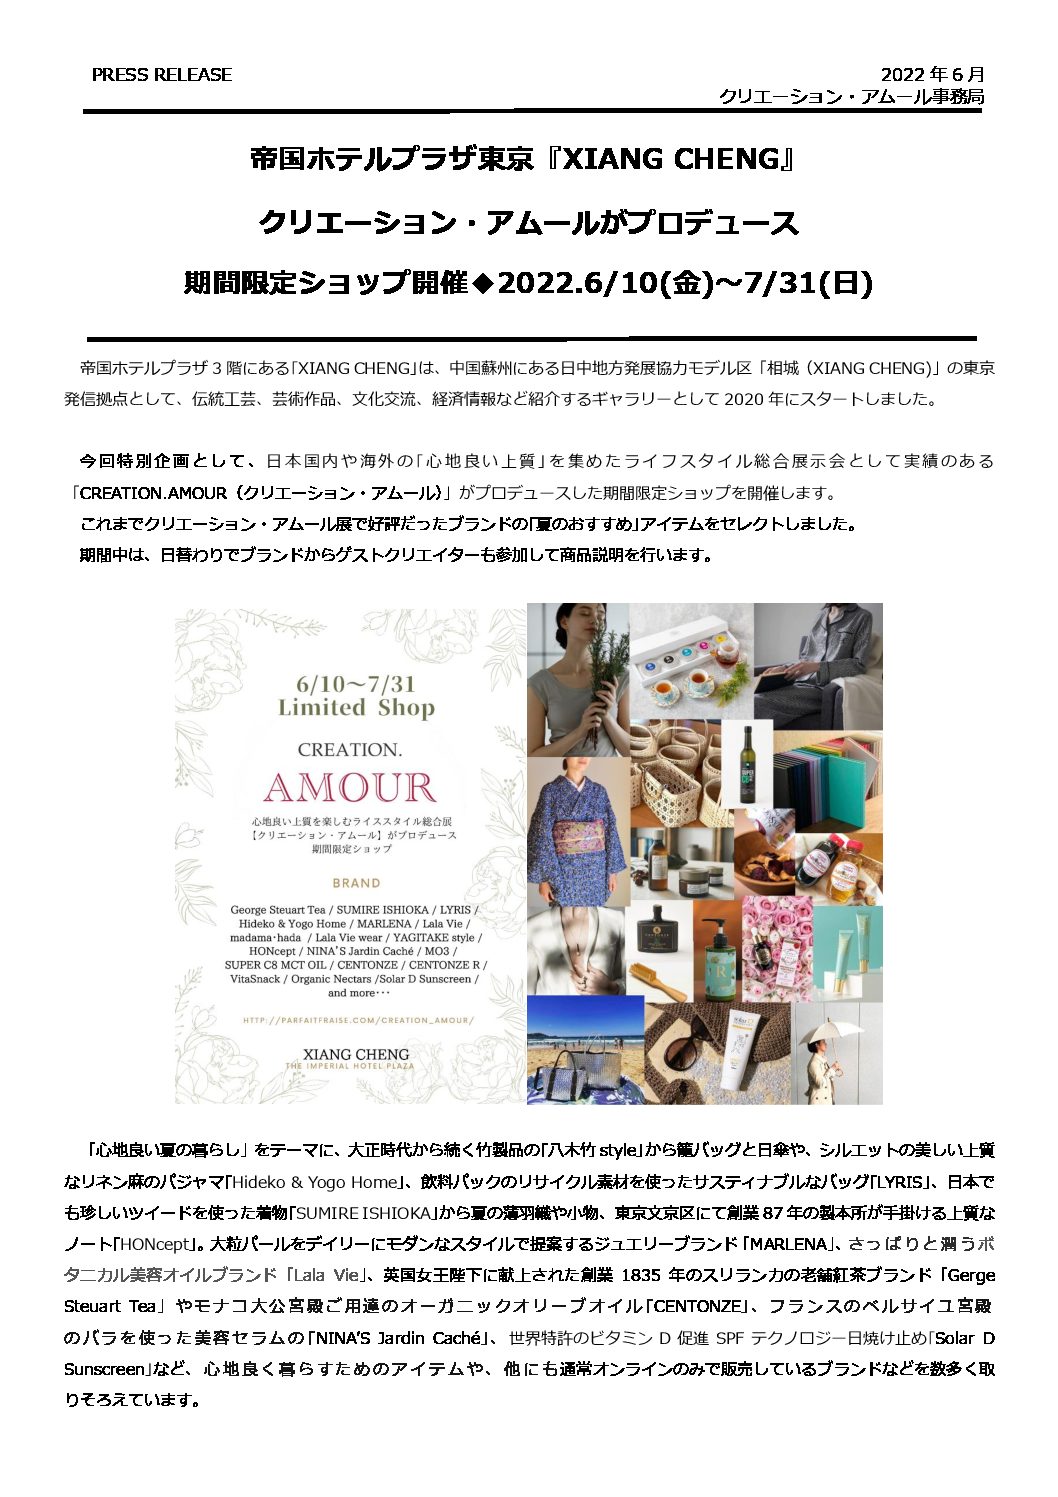 帝国ホテルプラザ東京 3階 XIANG CHENG『クリエーション・アムール』プロデュースの期間限定ショップに出展します